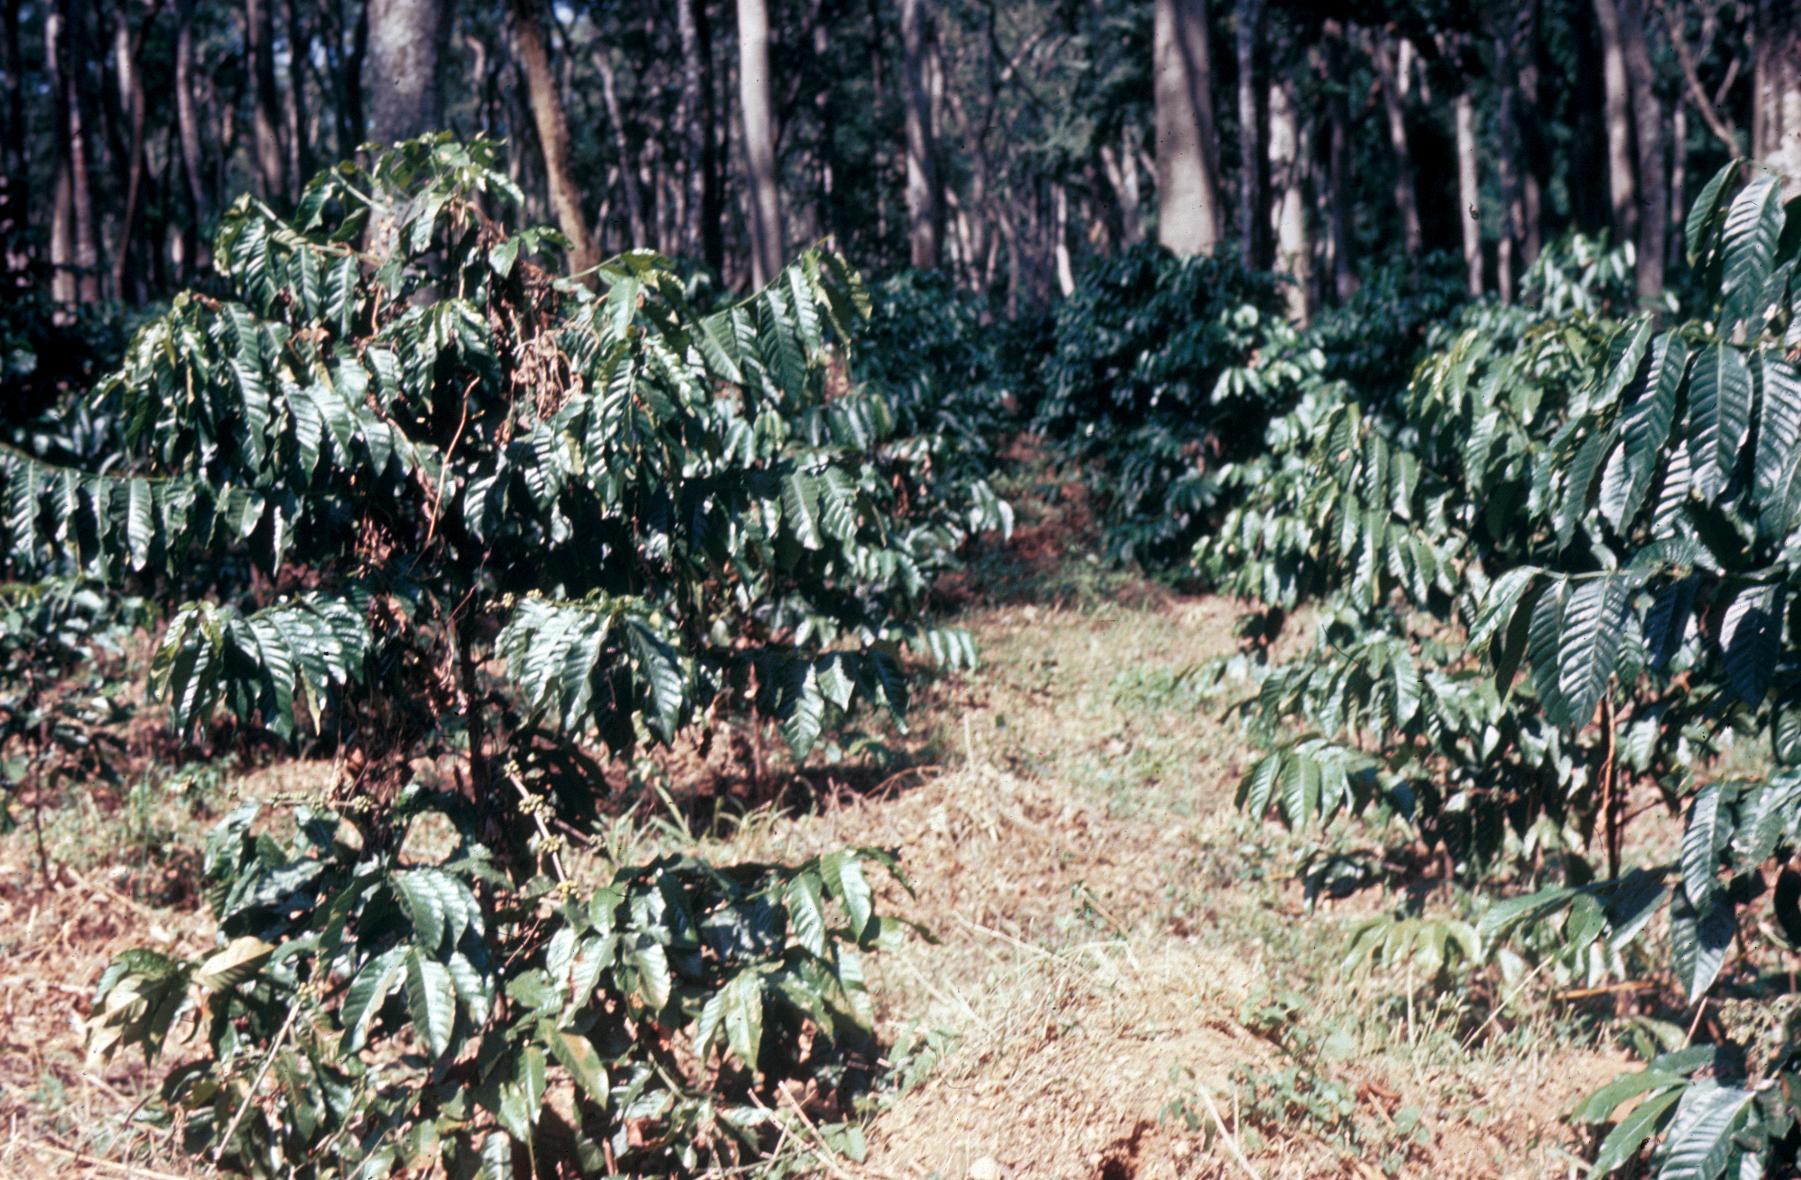 Coffee bush